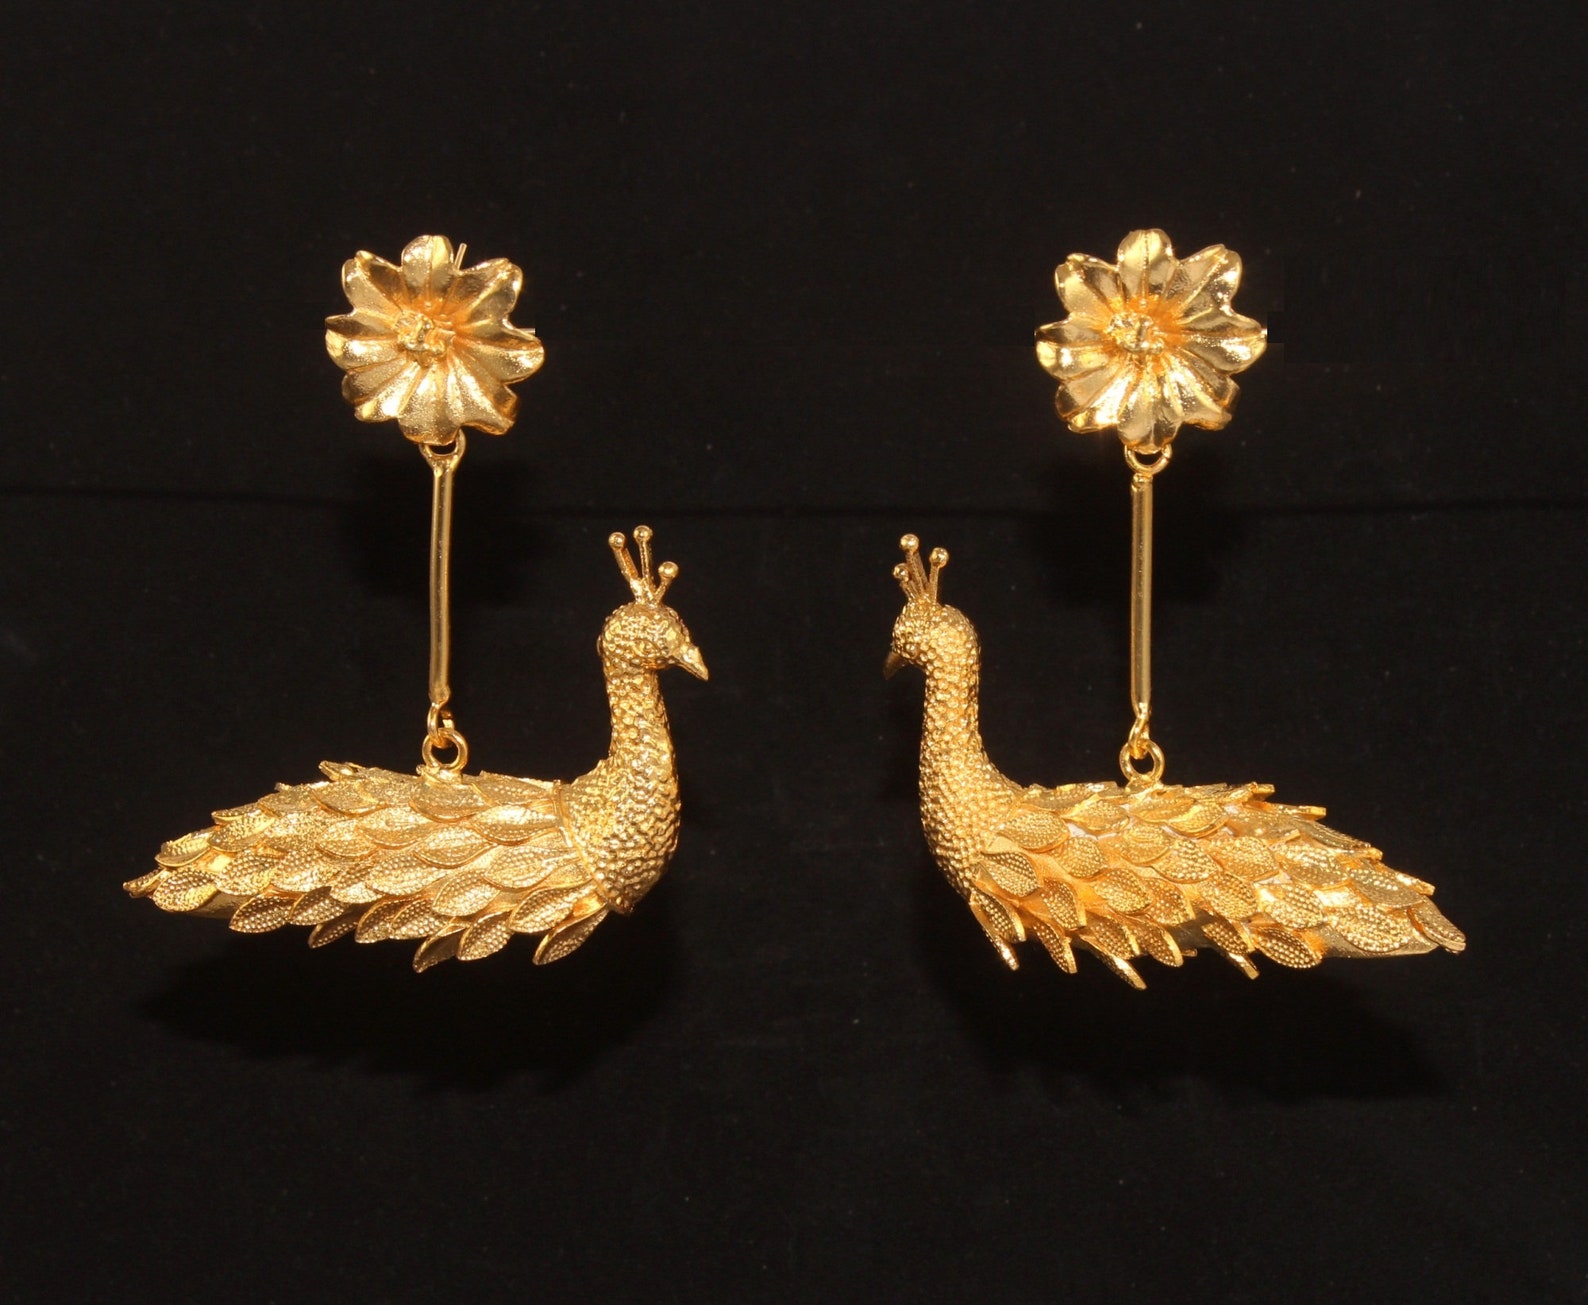 70x63mm 22kt Gold Plated Peacock Earrings Designer Long Etsy